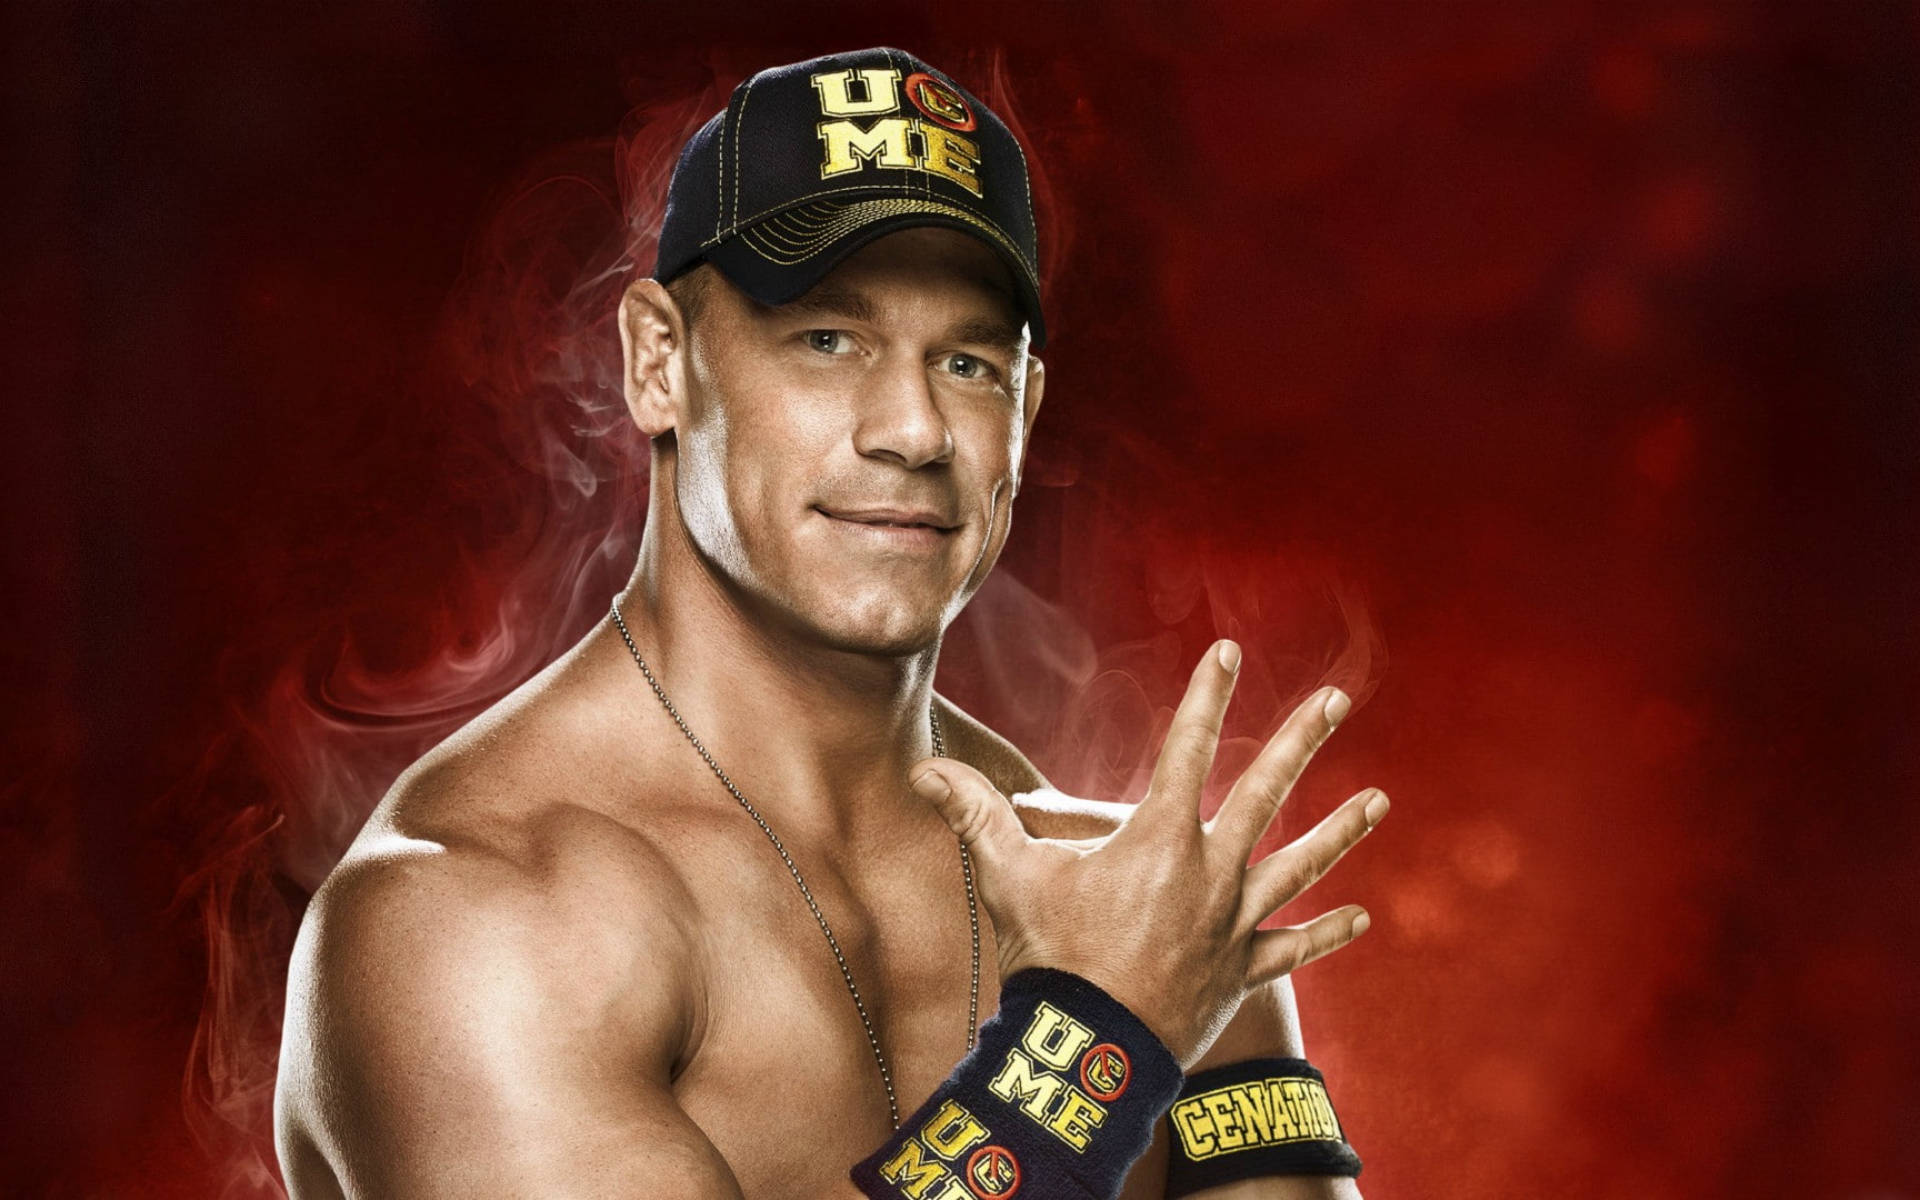 Wwe Wrestler John Cena In Red Background